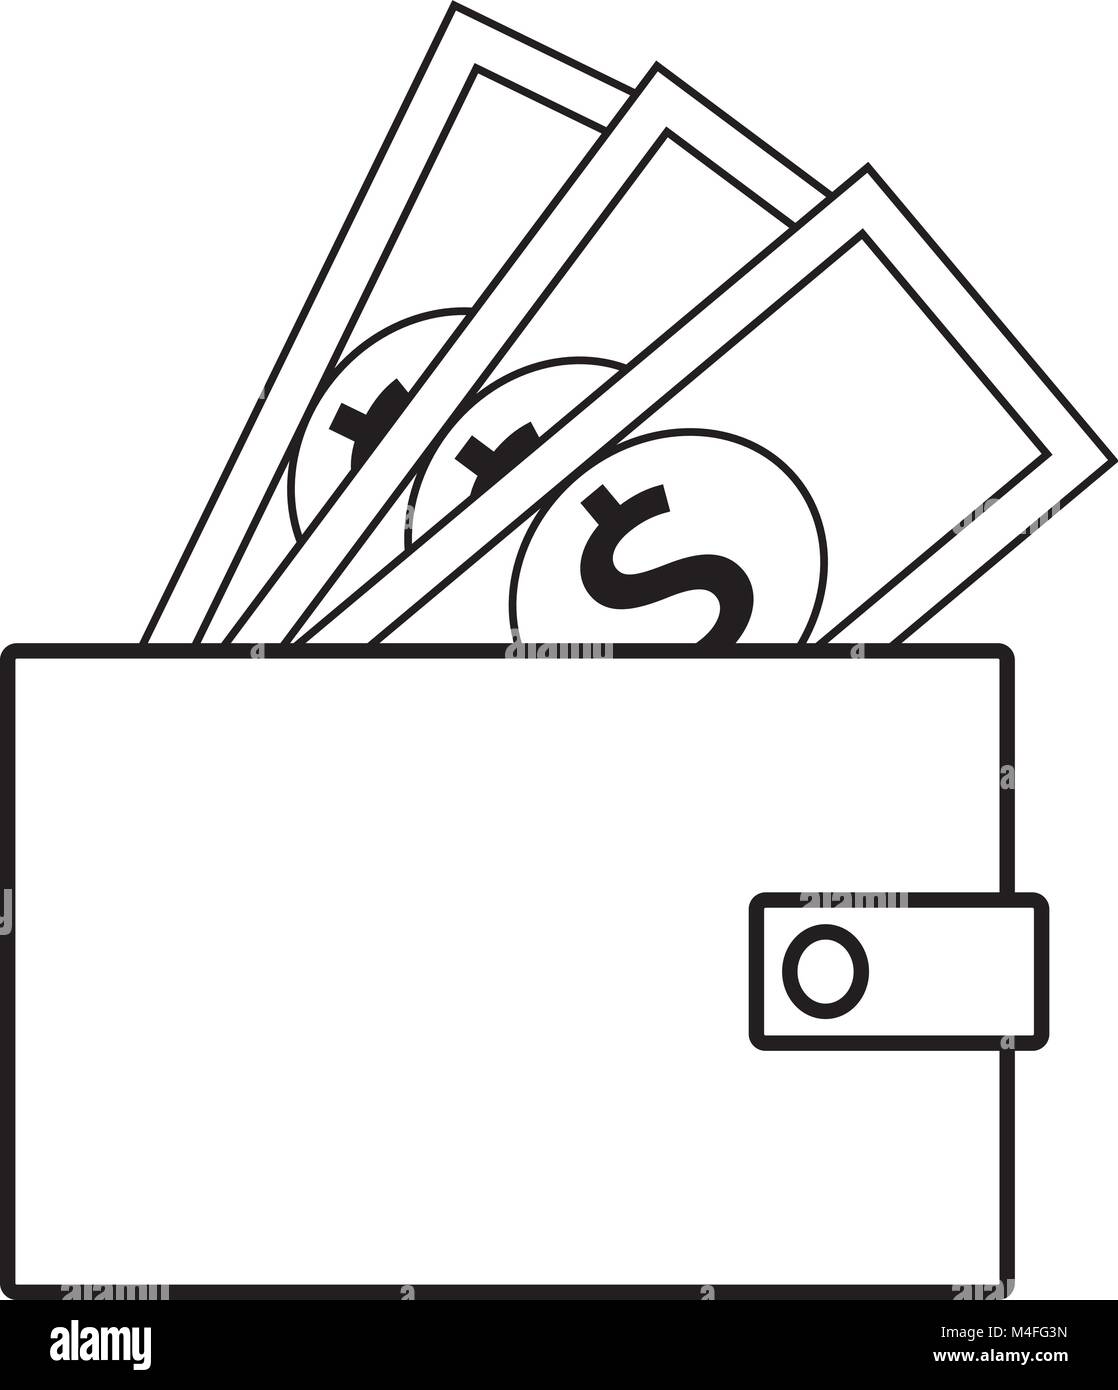 Dollar Währung Symbol oder Logo Vektor auf Notes knallen aus der Brieftasche. Symbol für die Vereinigten Staaten von Amerika Bank, Banken oder Britischen und Englisch Finanz Stock Vektor